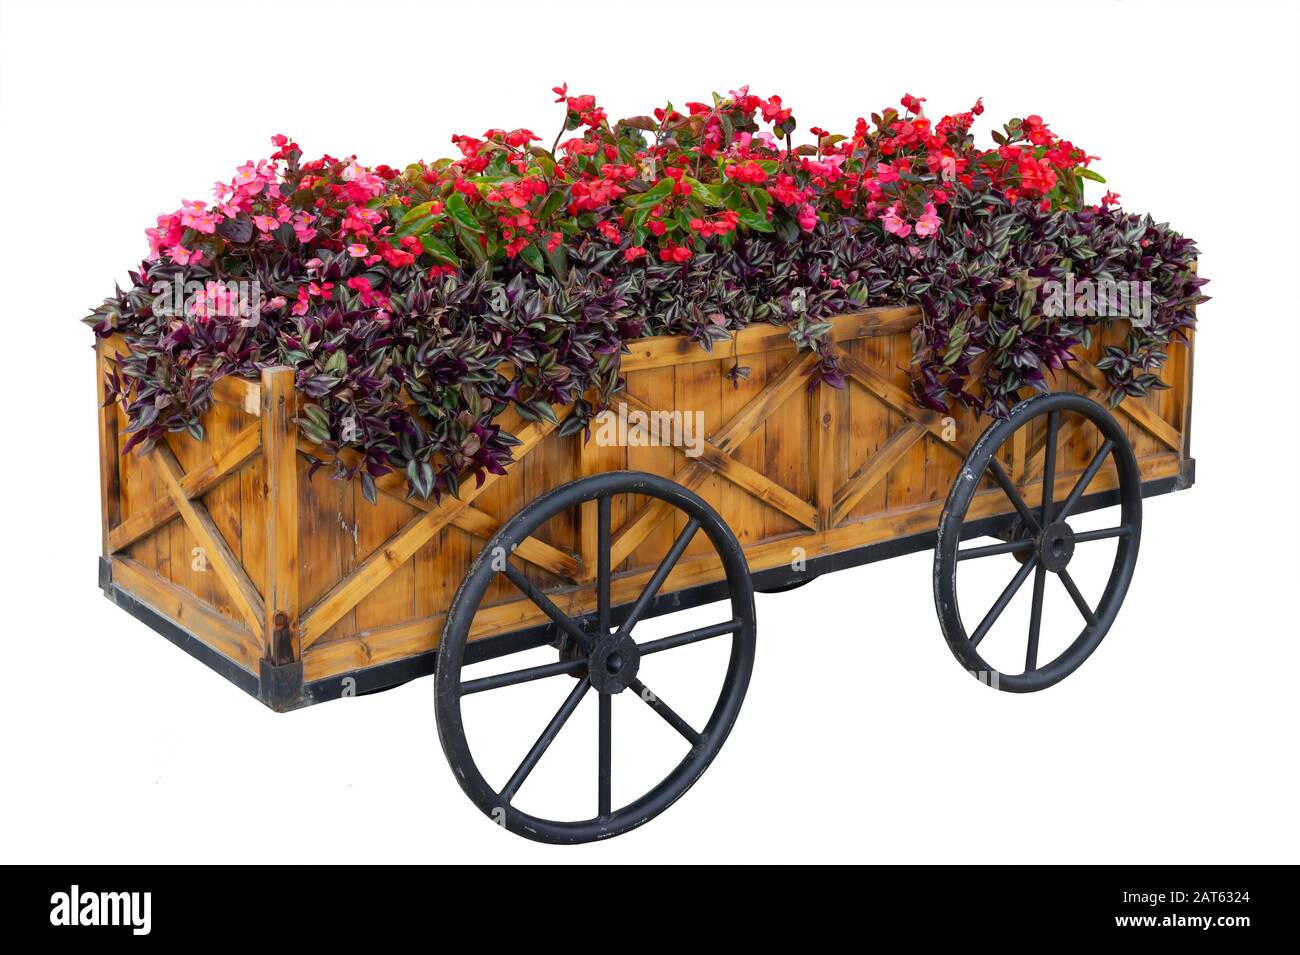 Isolato. Fiori colorati su carrello o carrello in legno in giardino su sfondo bianco Foto Stock